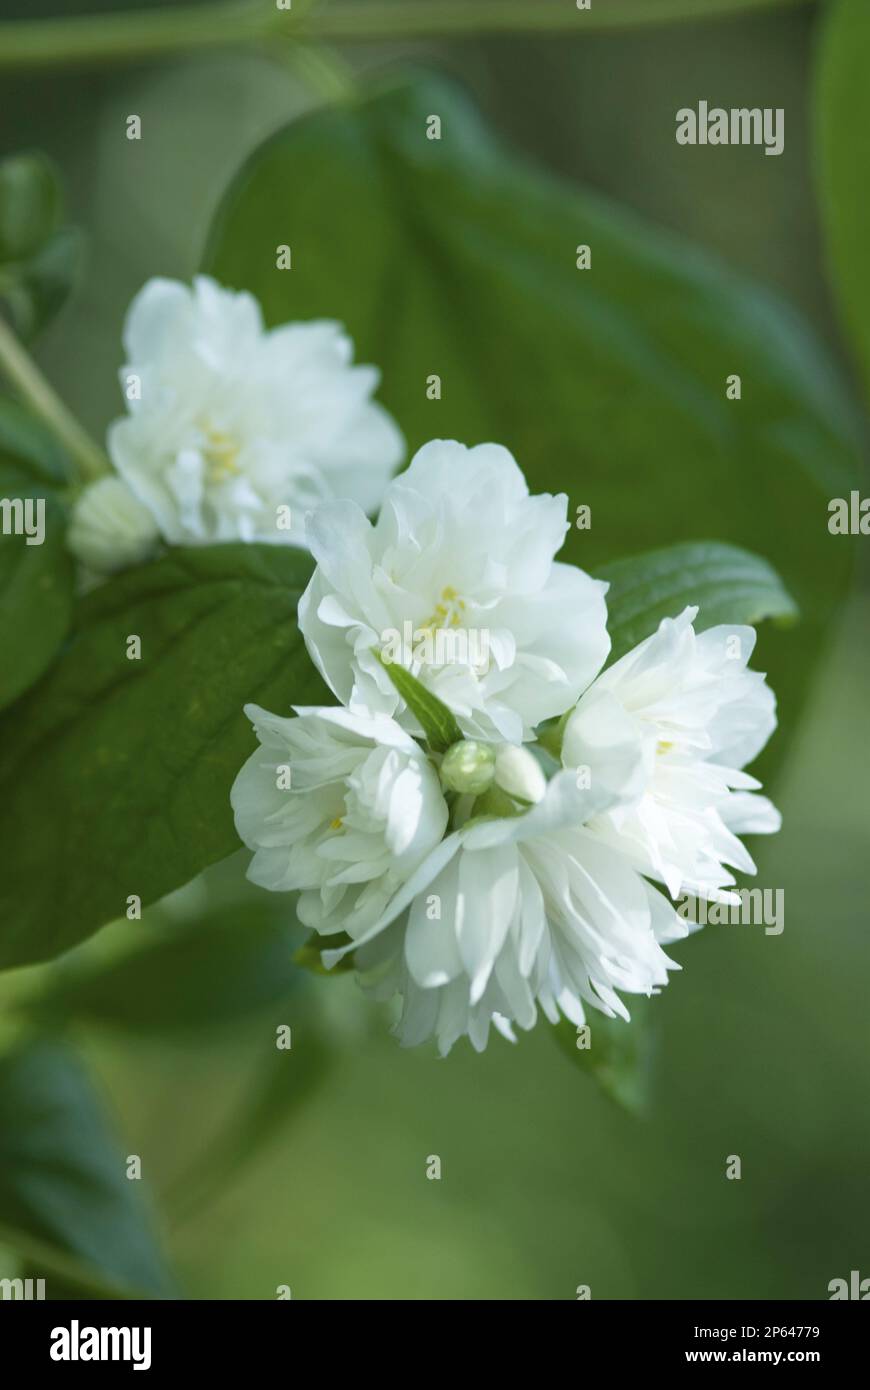 Philadelphus white clustered flower Stock Photo